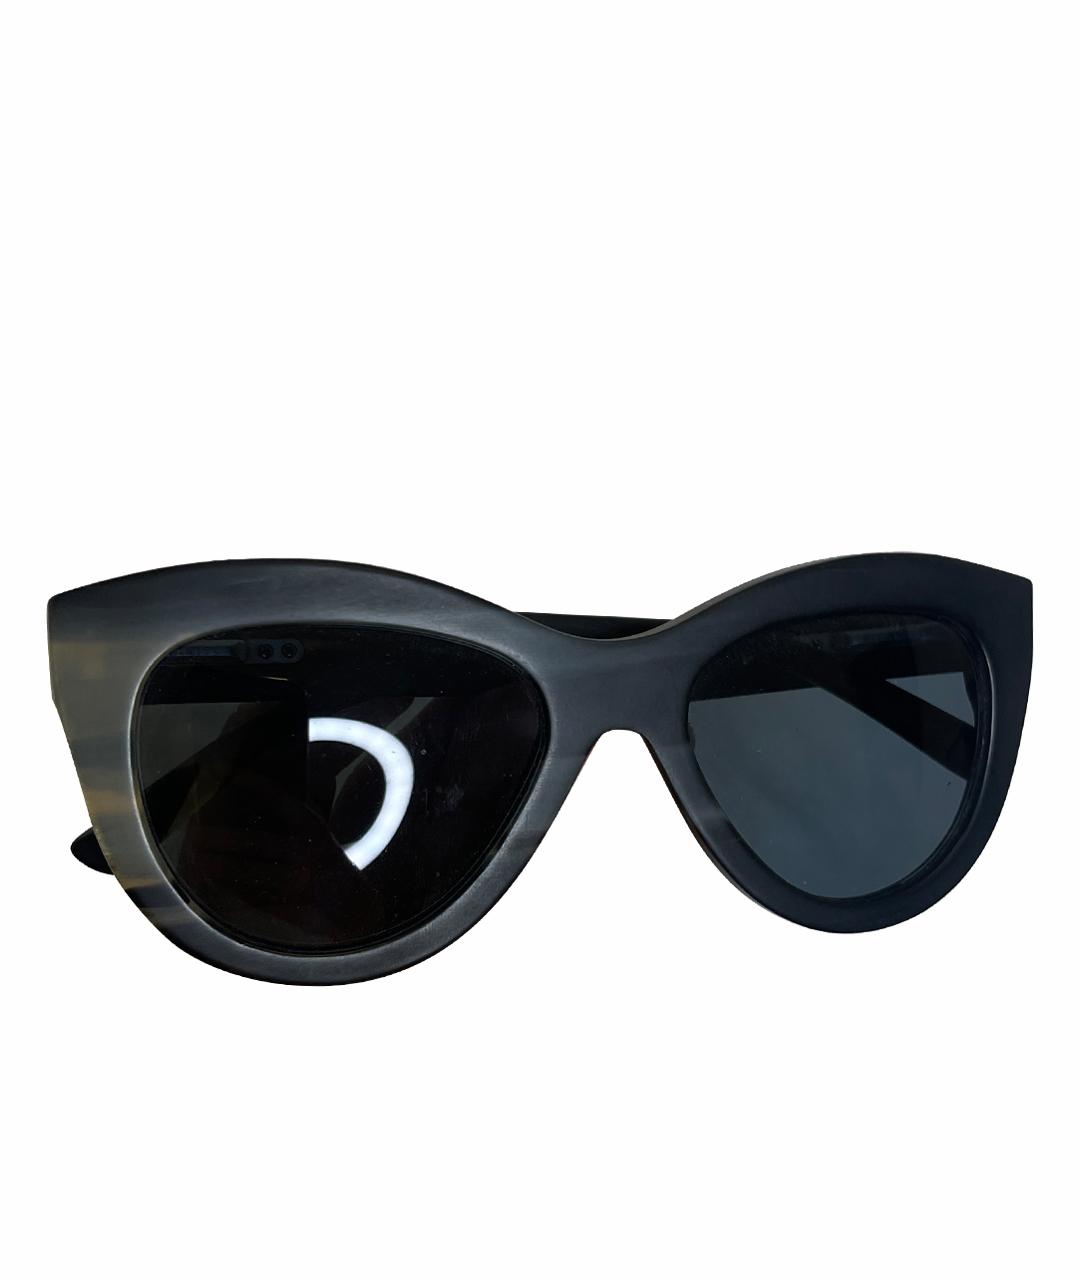 RIGARDS Черные пластиковые солнцезащитные очки, фото 1